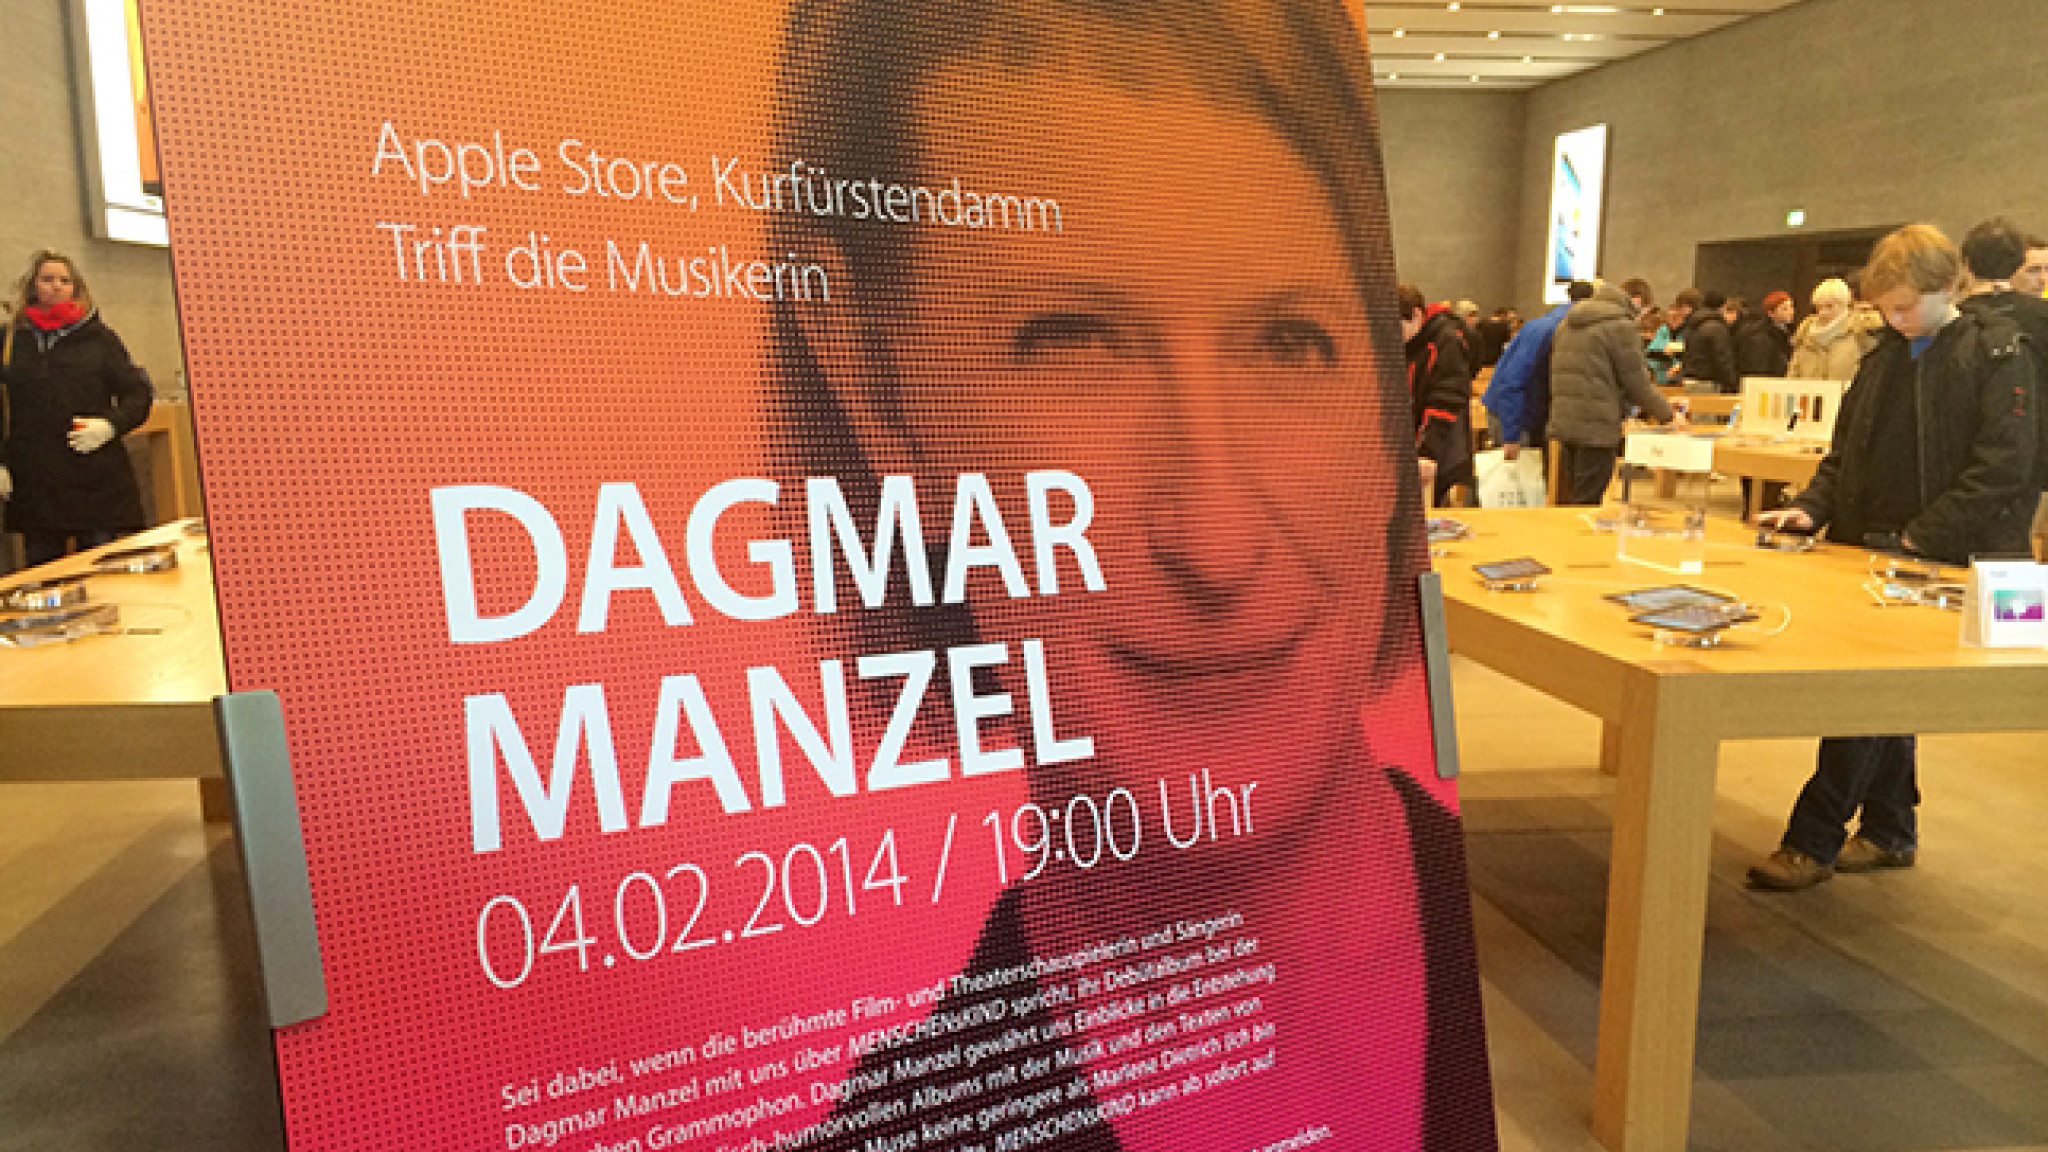 Dagmar Manzel mit "Menschenskind" zu Gast im Apple Store, Kurfüstendamm